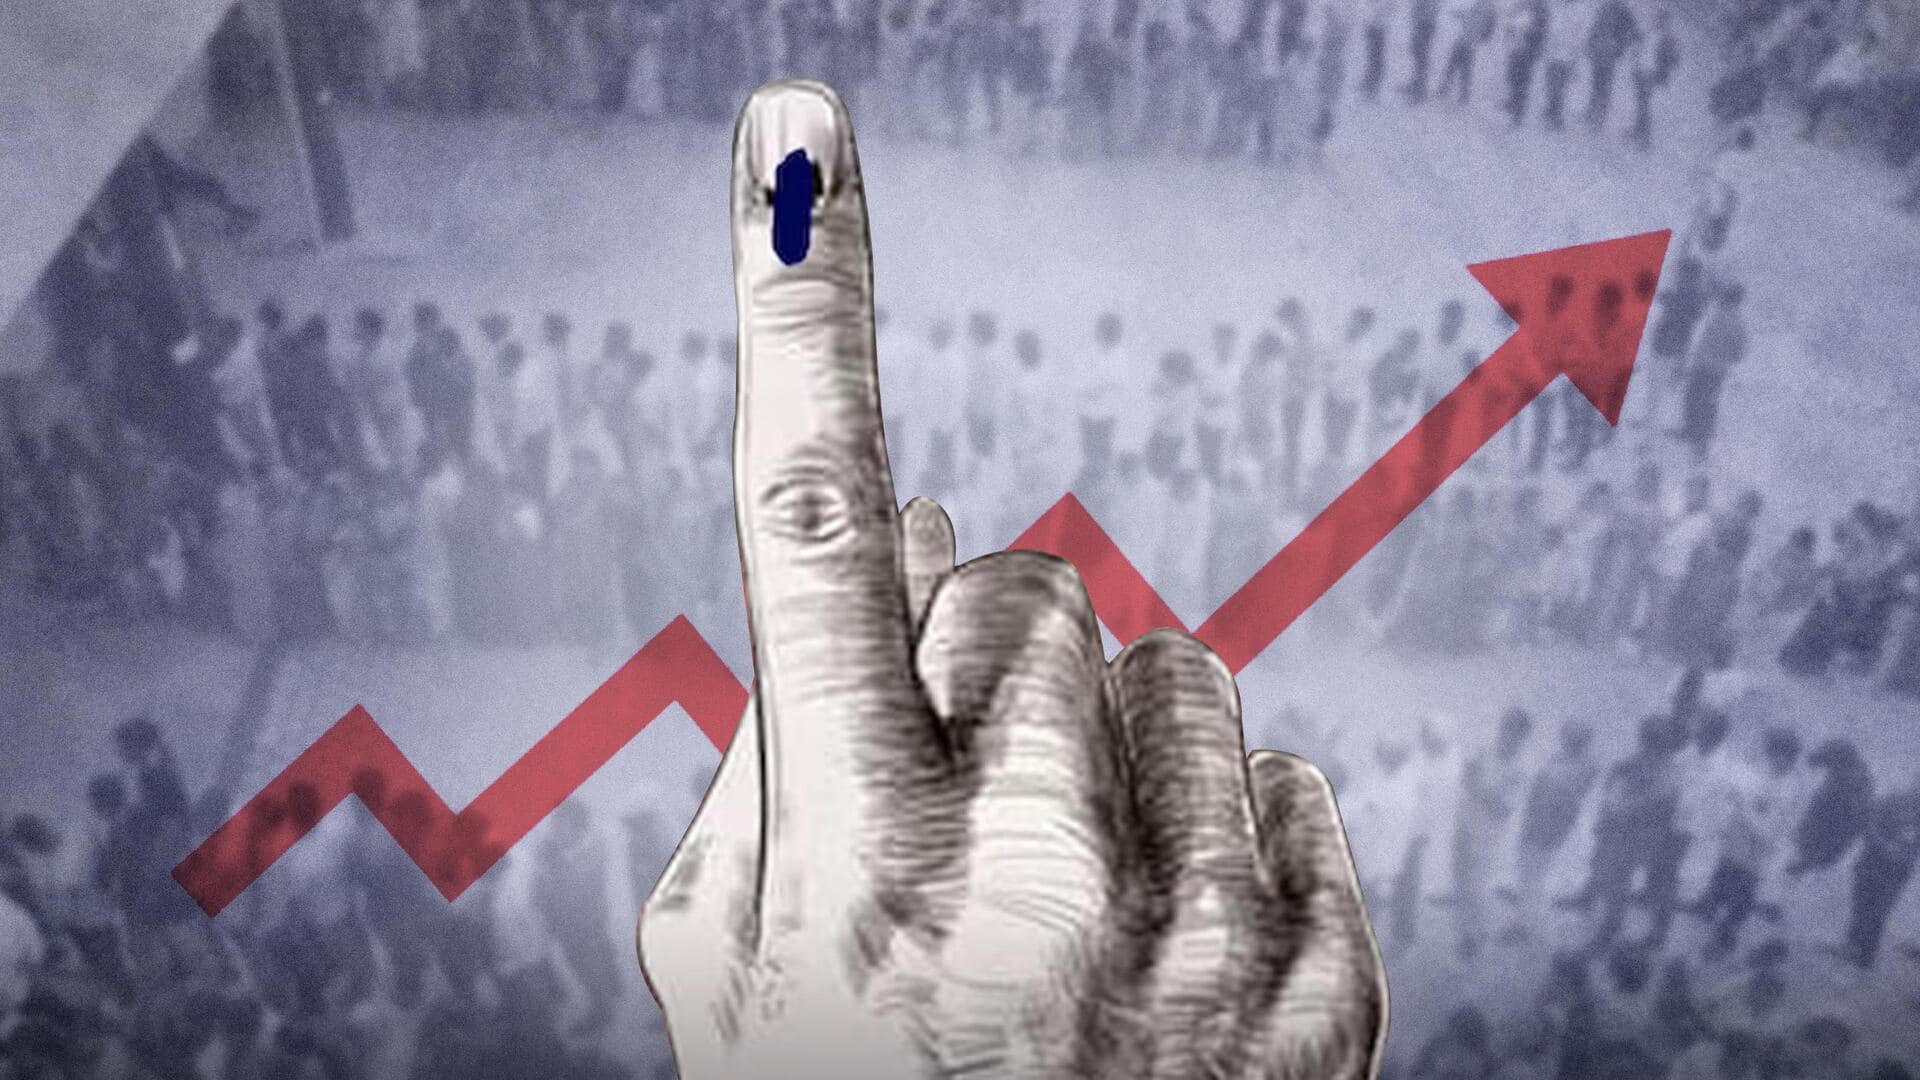 #NewsBytesExplainer: मध्य प्रदेश विधानसभा चुनावों में रिकॉर्ड तोड़ मतदान, नतीजों पर क्या होगा असर?